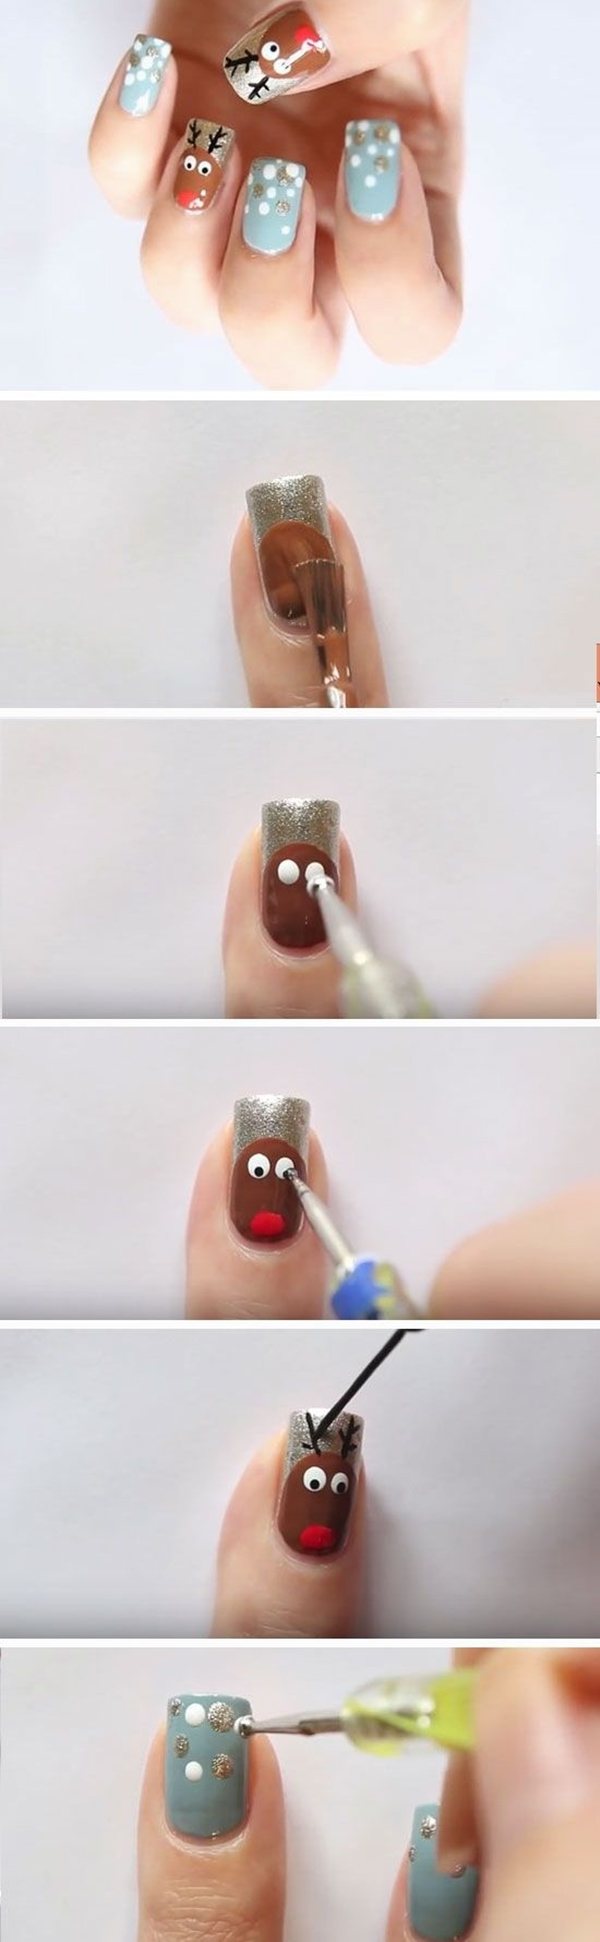 Easy DIY christmas nail art designs rudolf reindeer